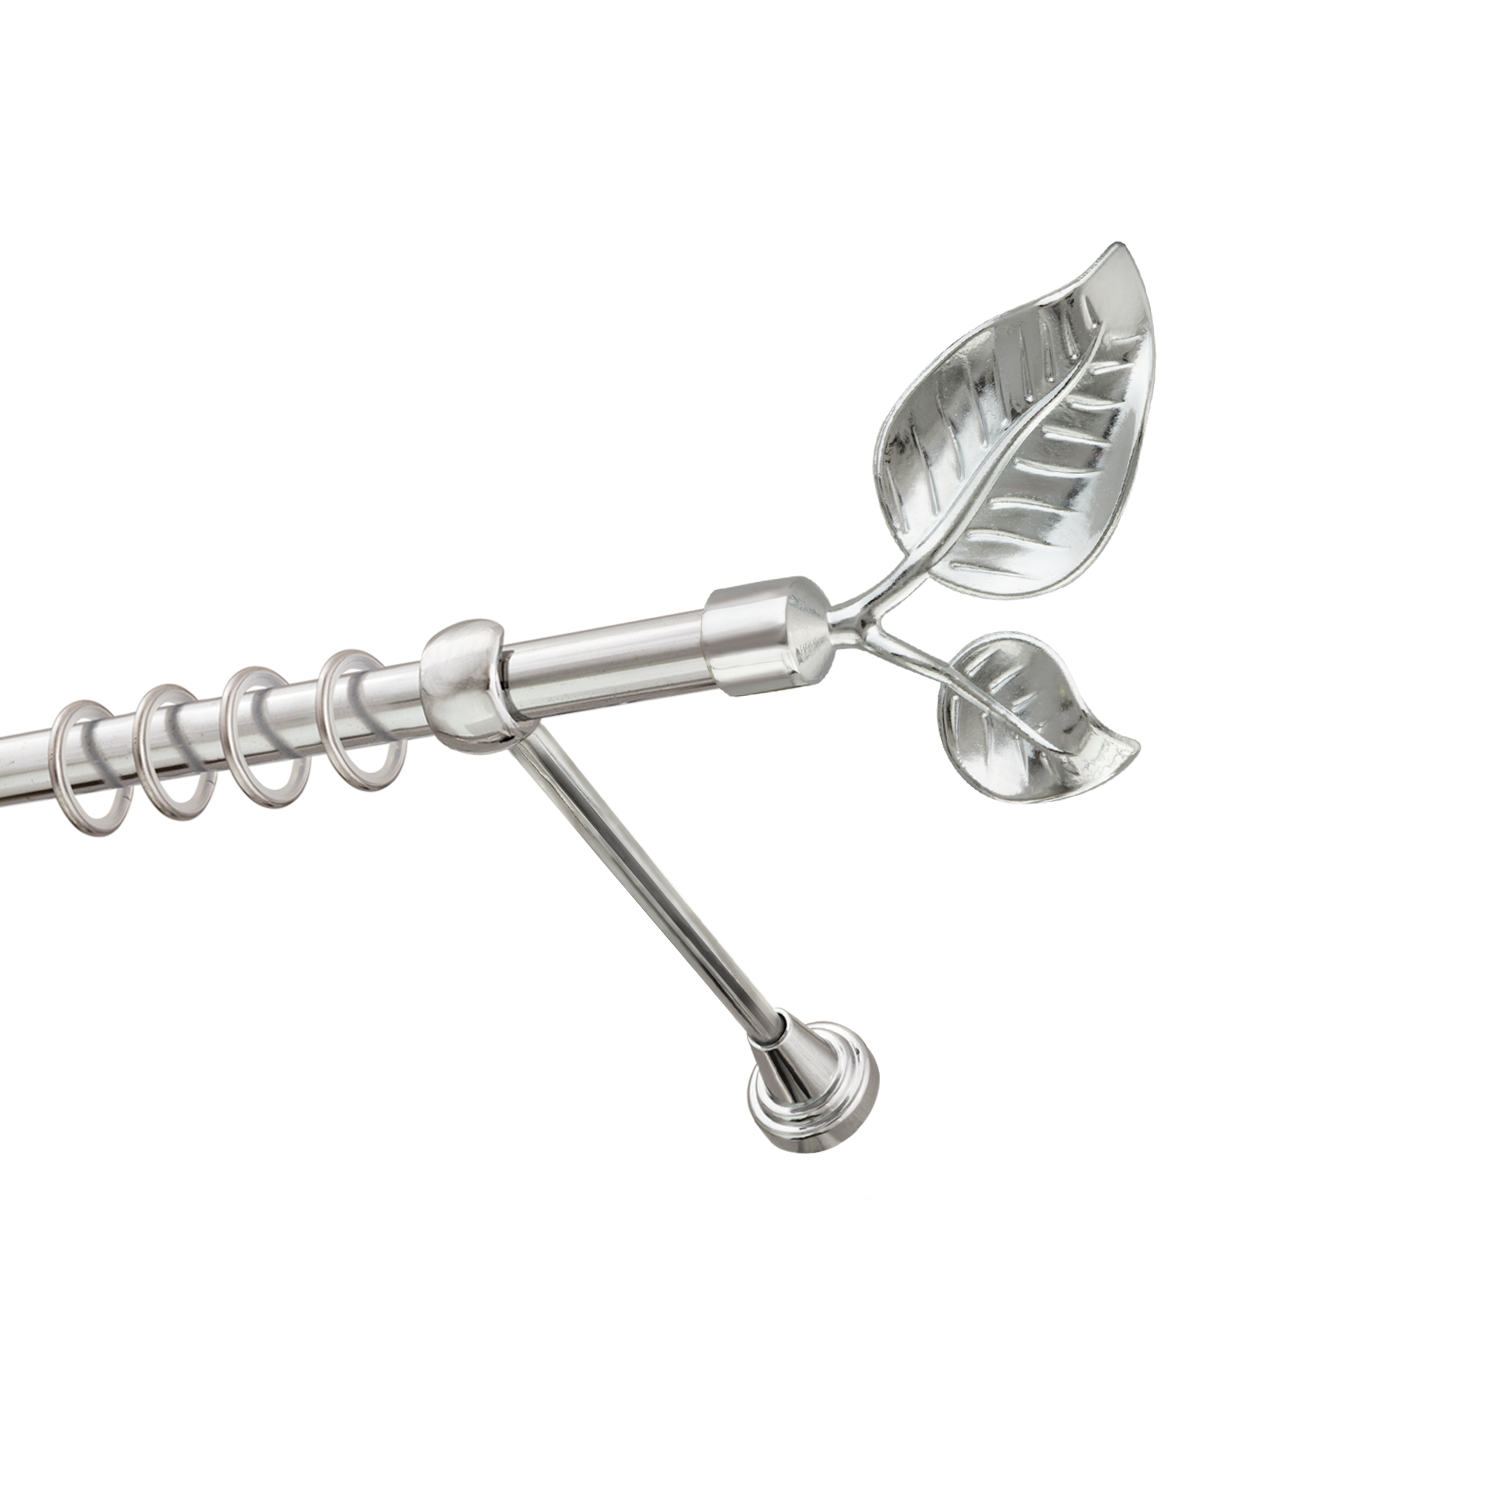 Металлический карниз для штор Тропик, однорядный 16 мм, серебро, гладкая штанга, длина 300 см - фото Wikidecor.ru